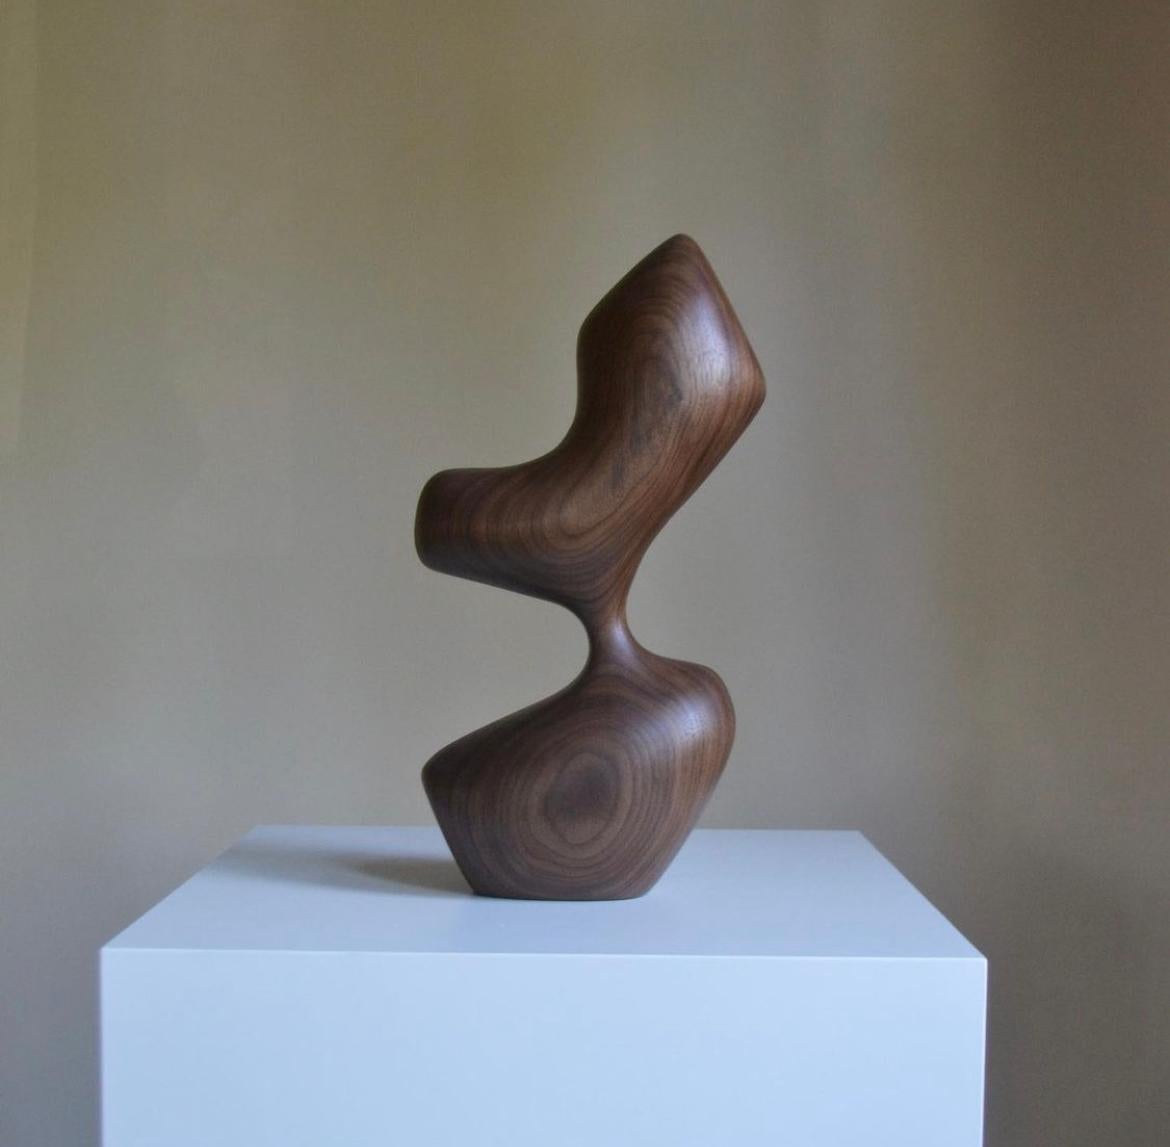 Arbol - Sculpture by Chandler McLellan